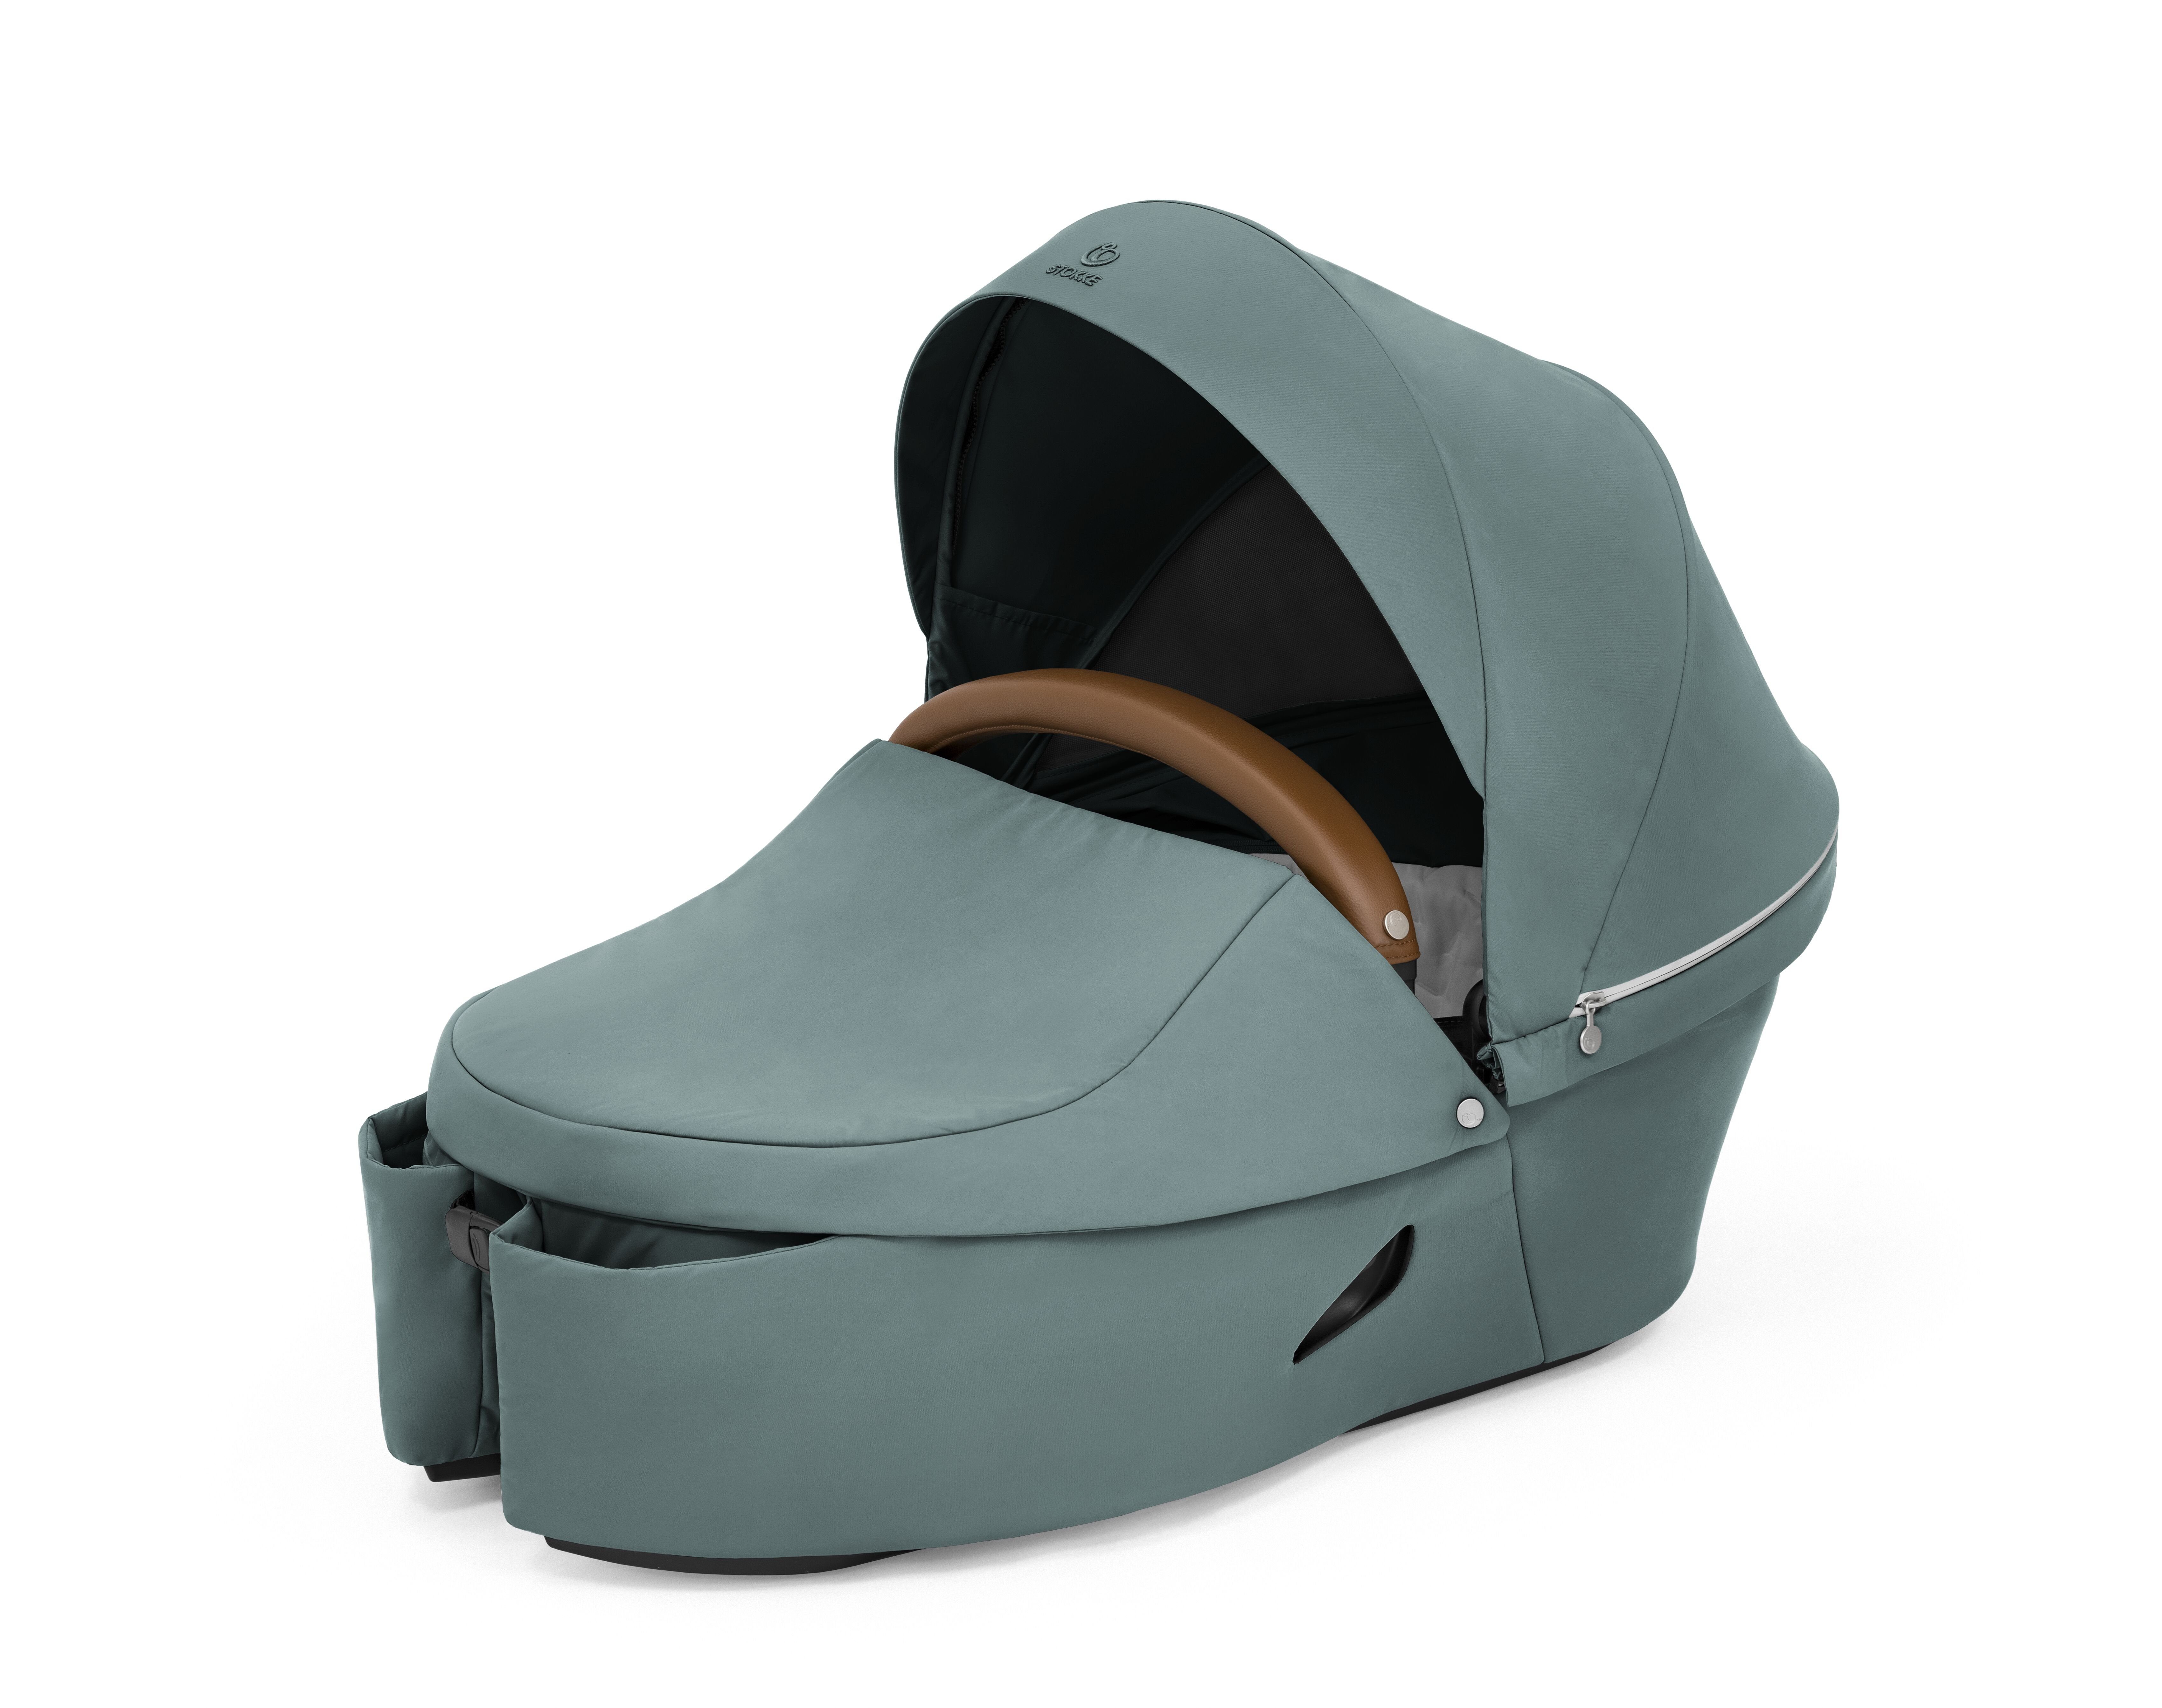 Teal Cool - Babyschale Babykomfort unterwegs Xplory® X Babyschale für Stokke